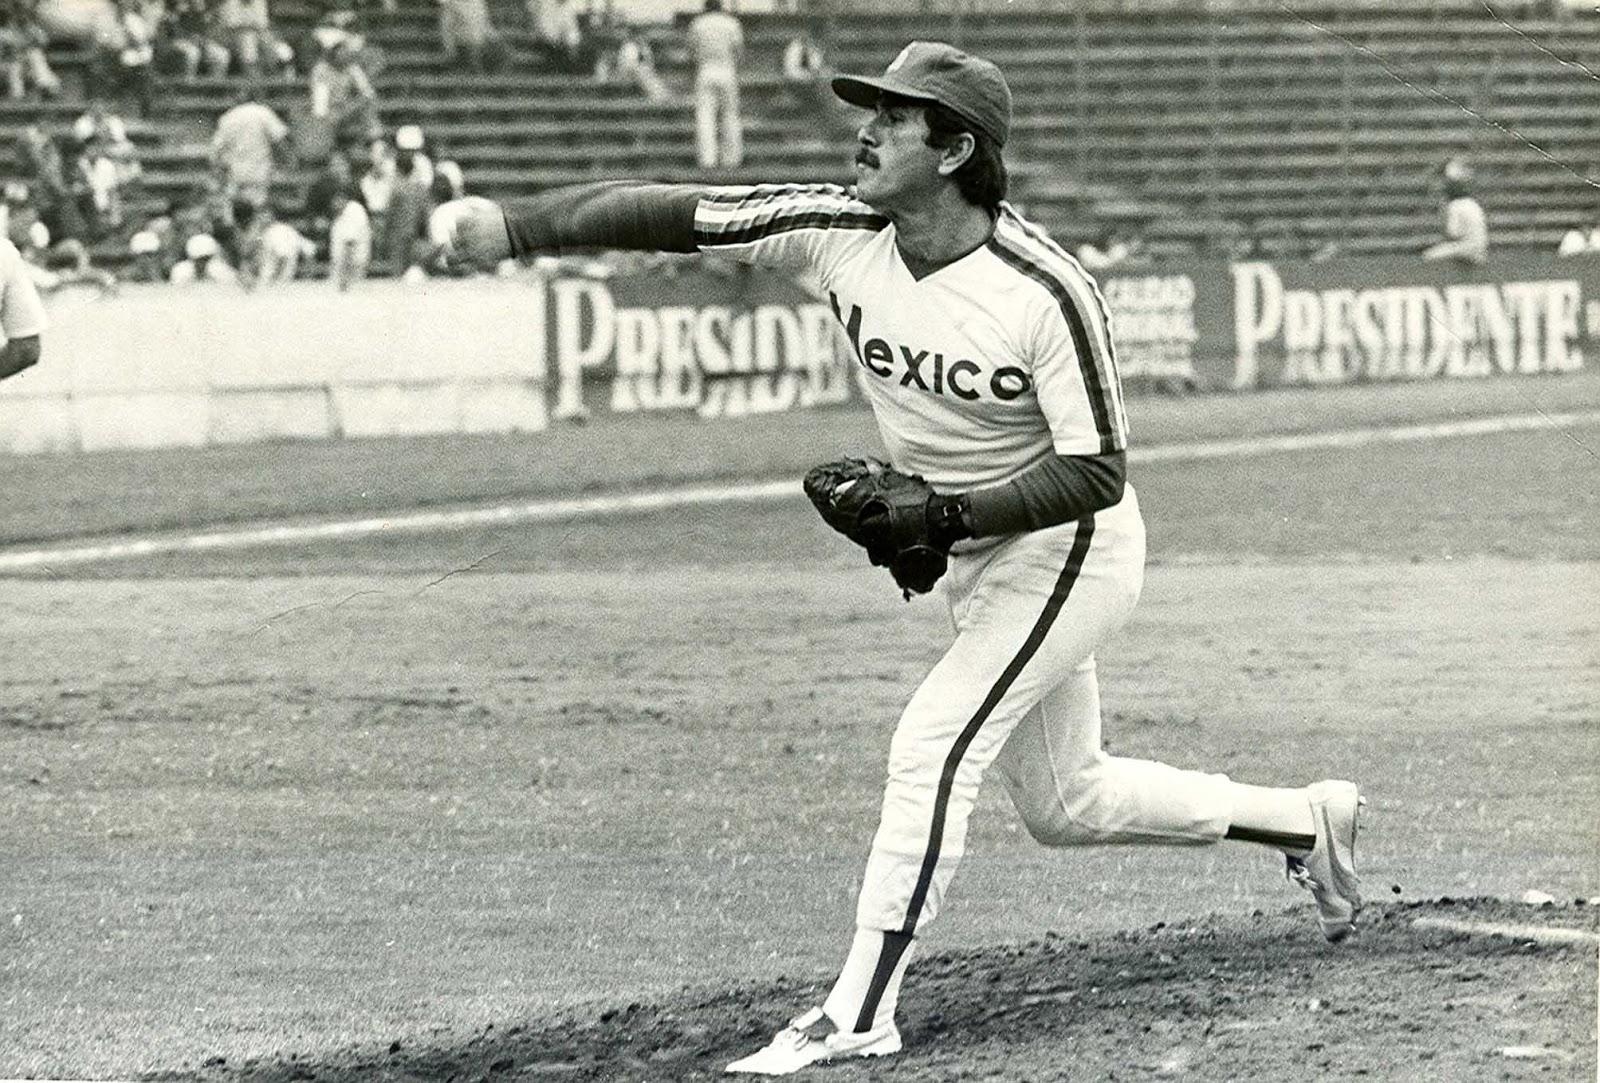 Foto en blanco y negro de un jugador de béisbol lanzando una pelotaDescripción generada automáticamente